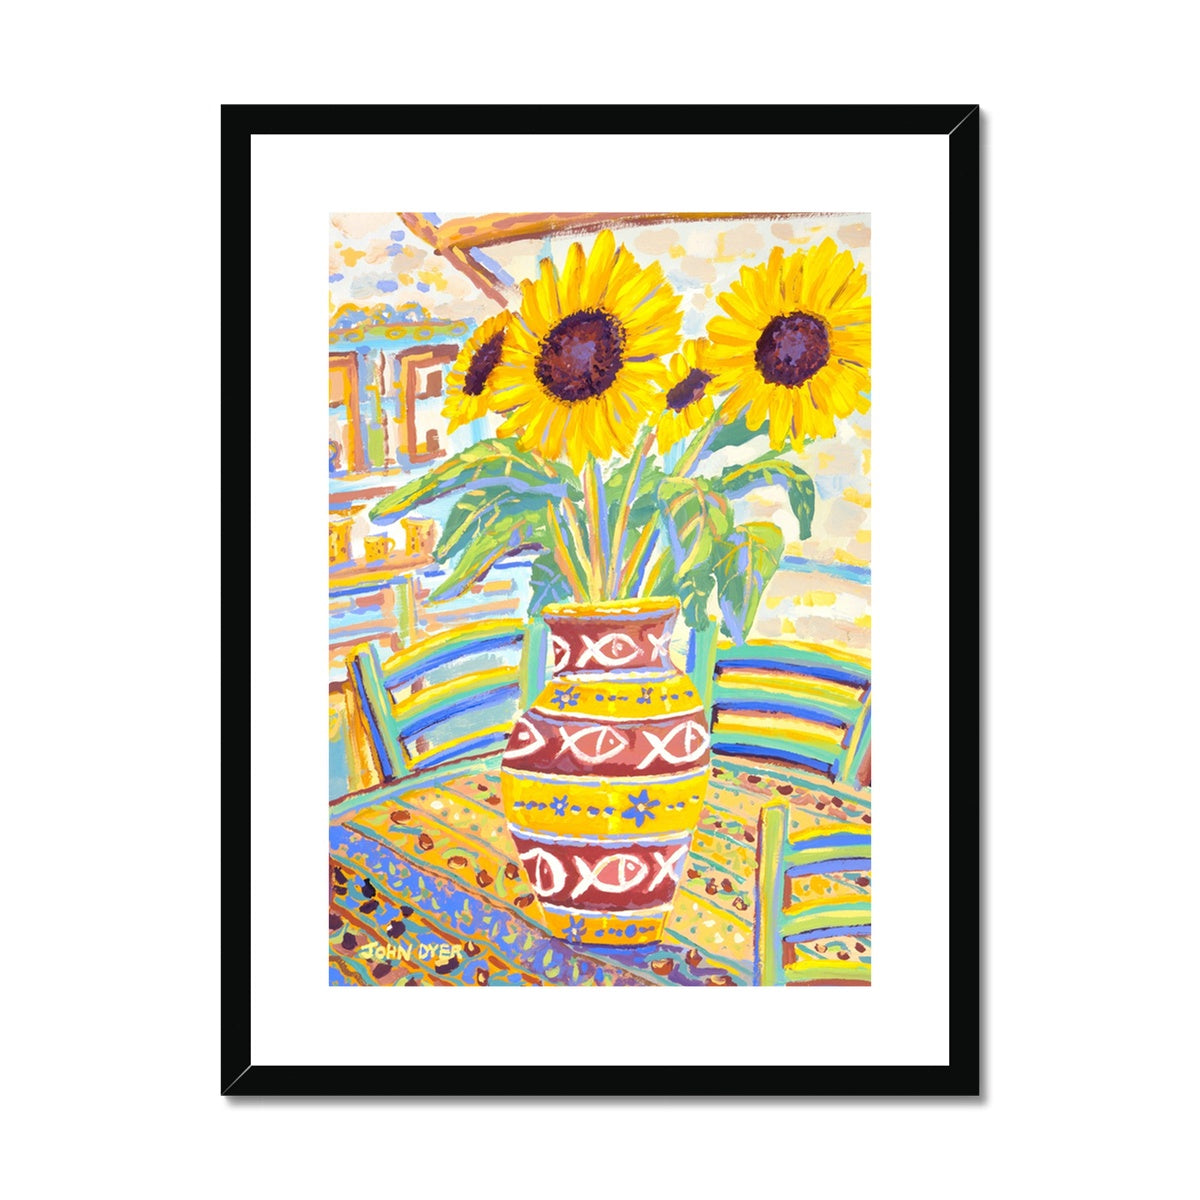 John Dyer Framed Open Edition French Sunflower Art Print. 'Flowers Full of Sunshine'